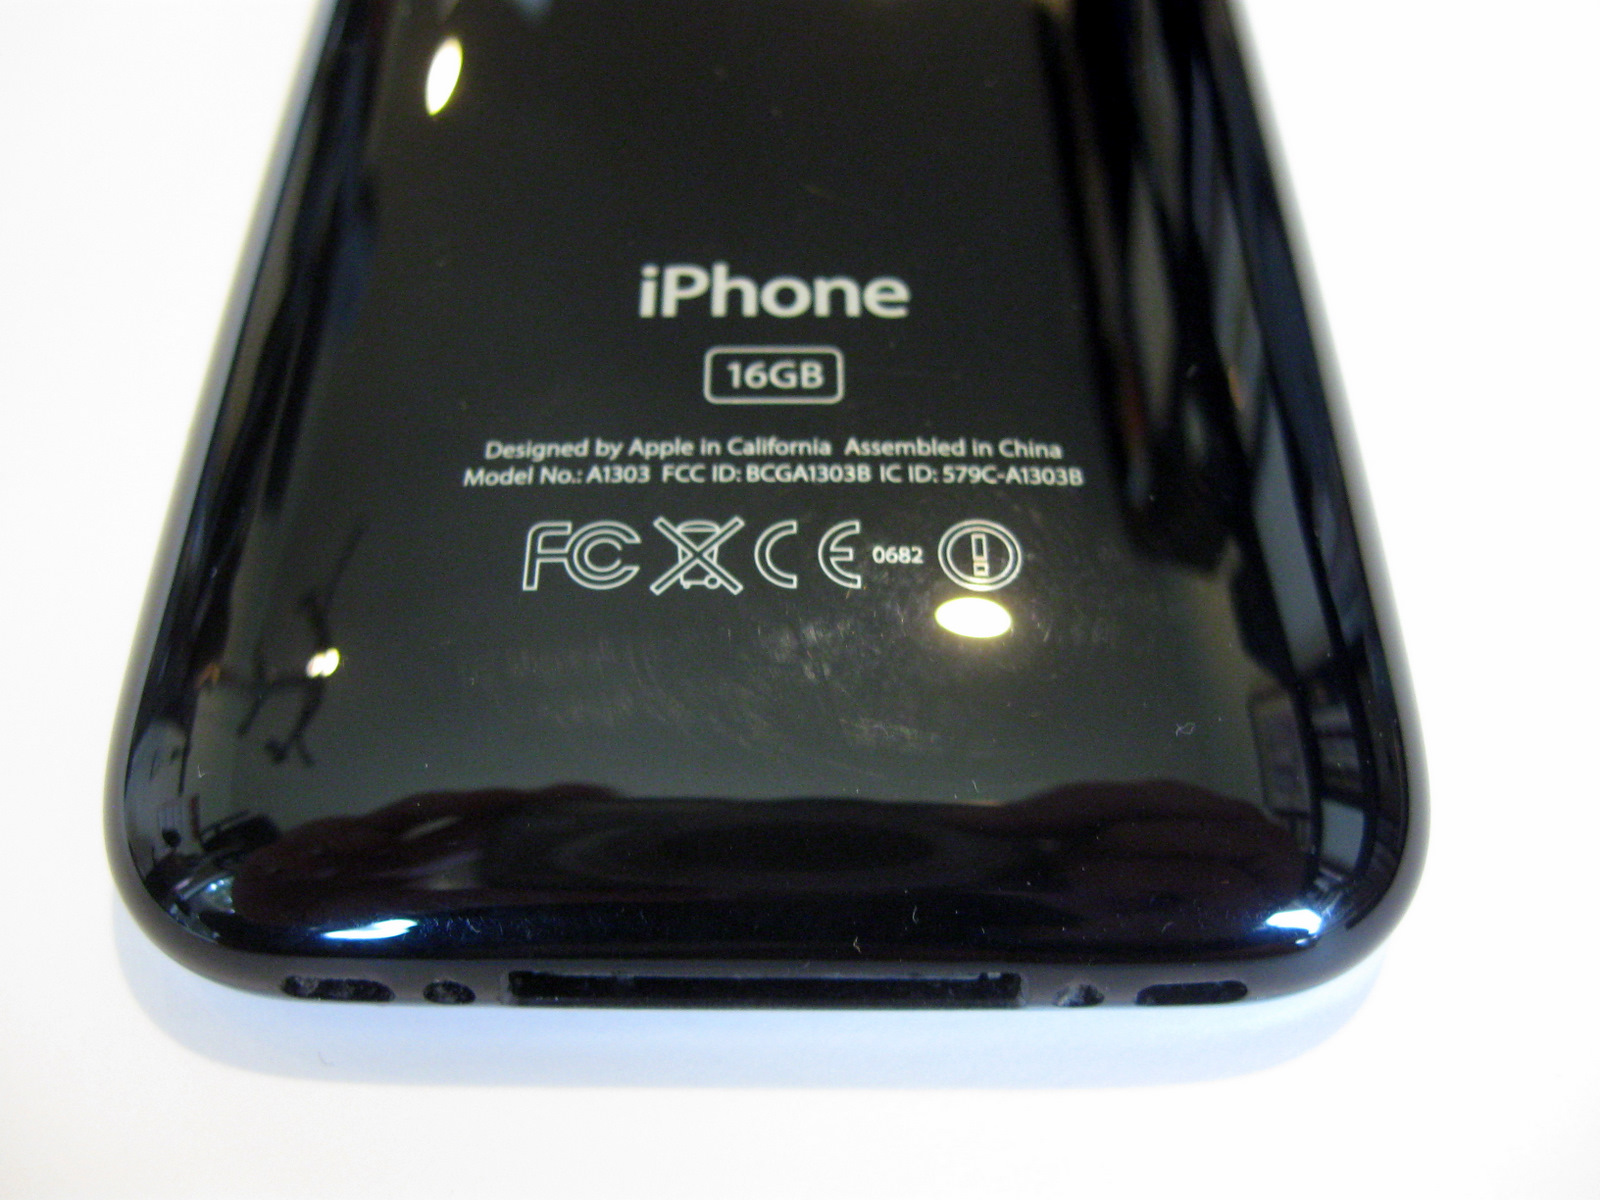 Iphone 3gs 16gb